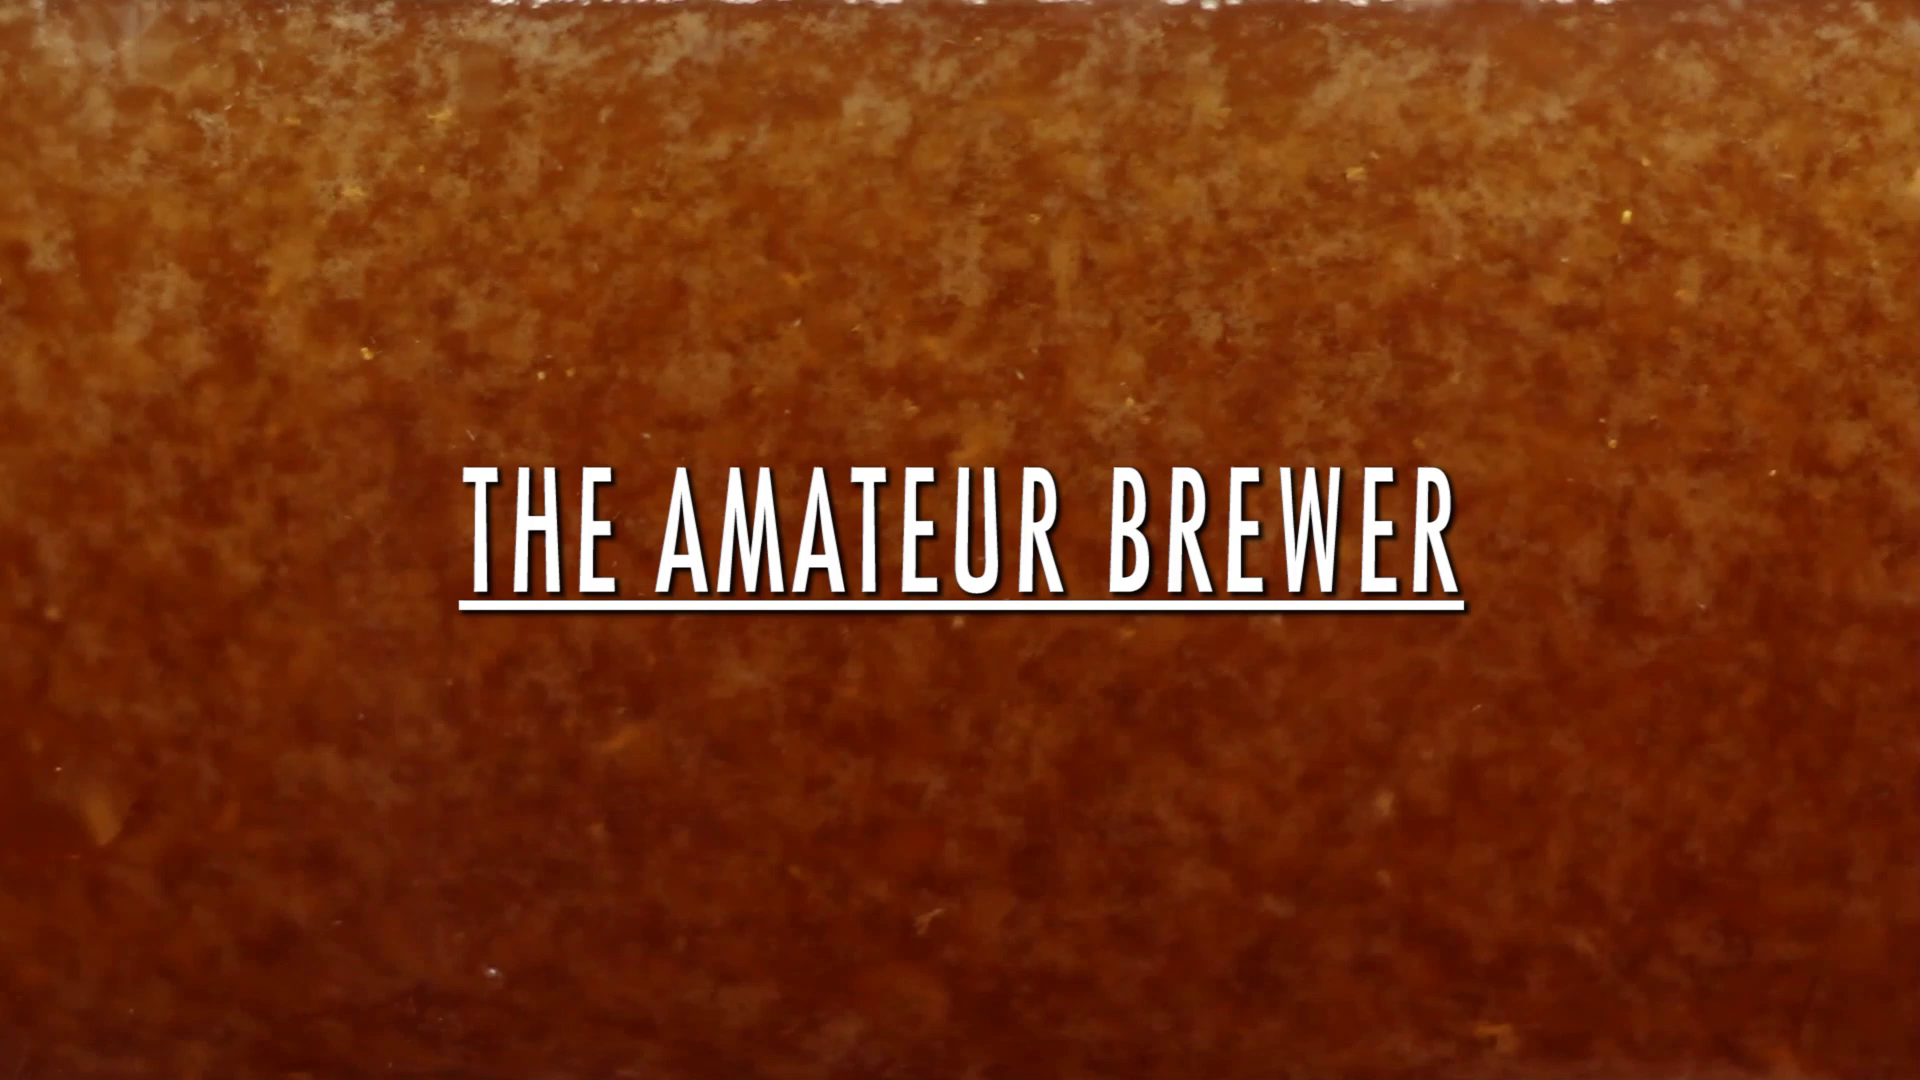 The Amateur Brewer Short Film